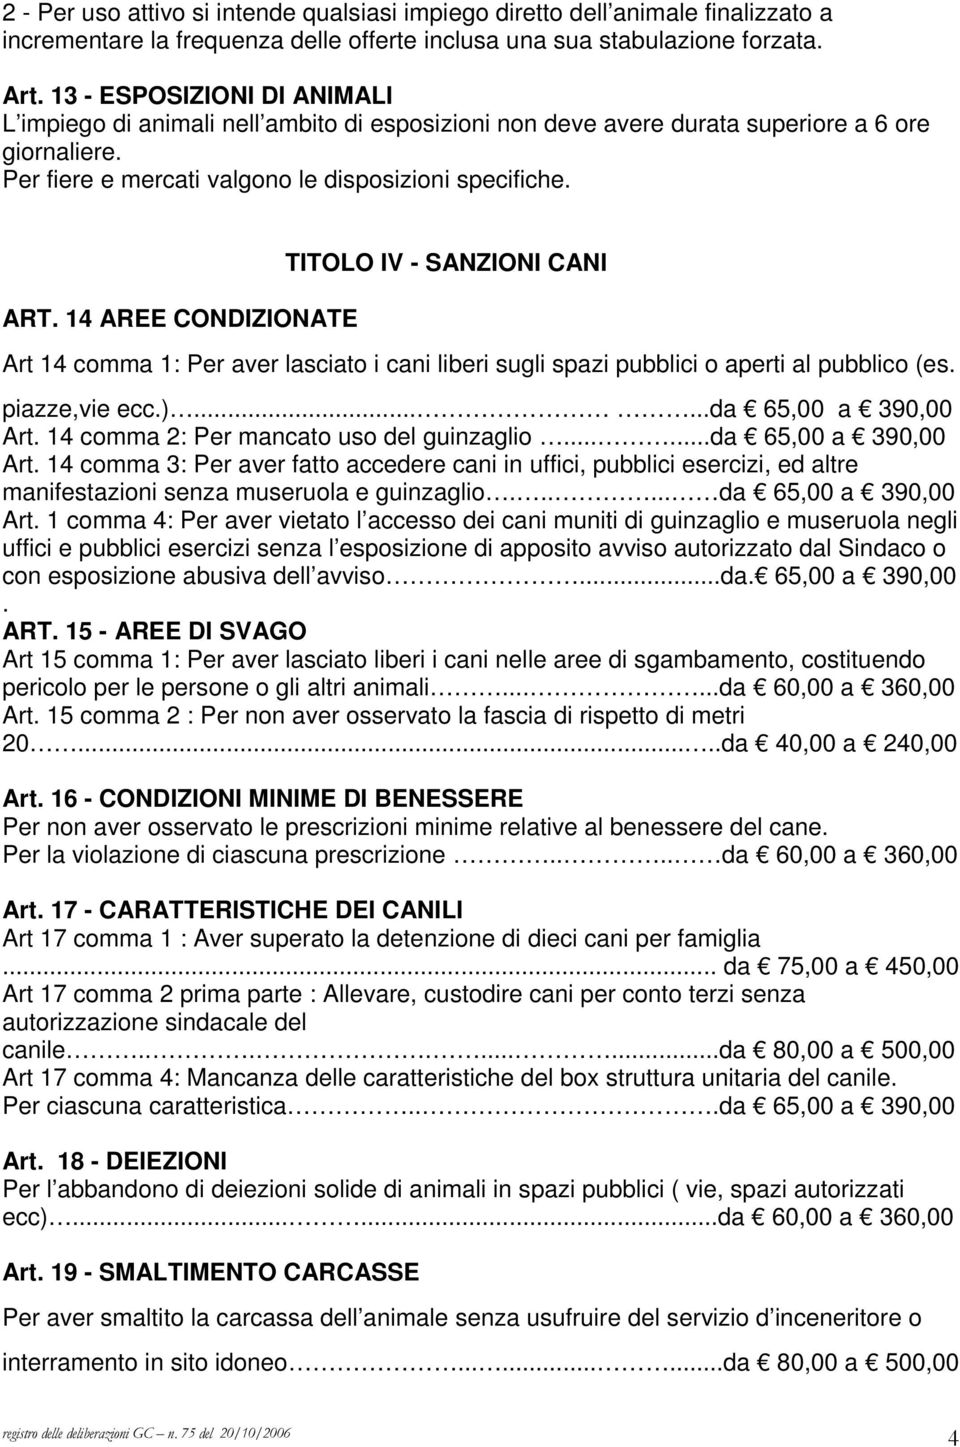 14 AREE CONDIZIONATE TITOLO IV - SANZIONI CANI Art 14 comma 1: Per aver lasciato i cani liberi sugli spazi pubblici o aperti al pubblico (es. piazze,vie ecc.)......da 65,00 a 390,00 Art.